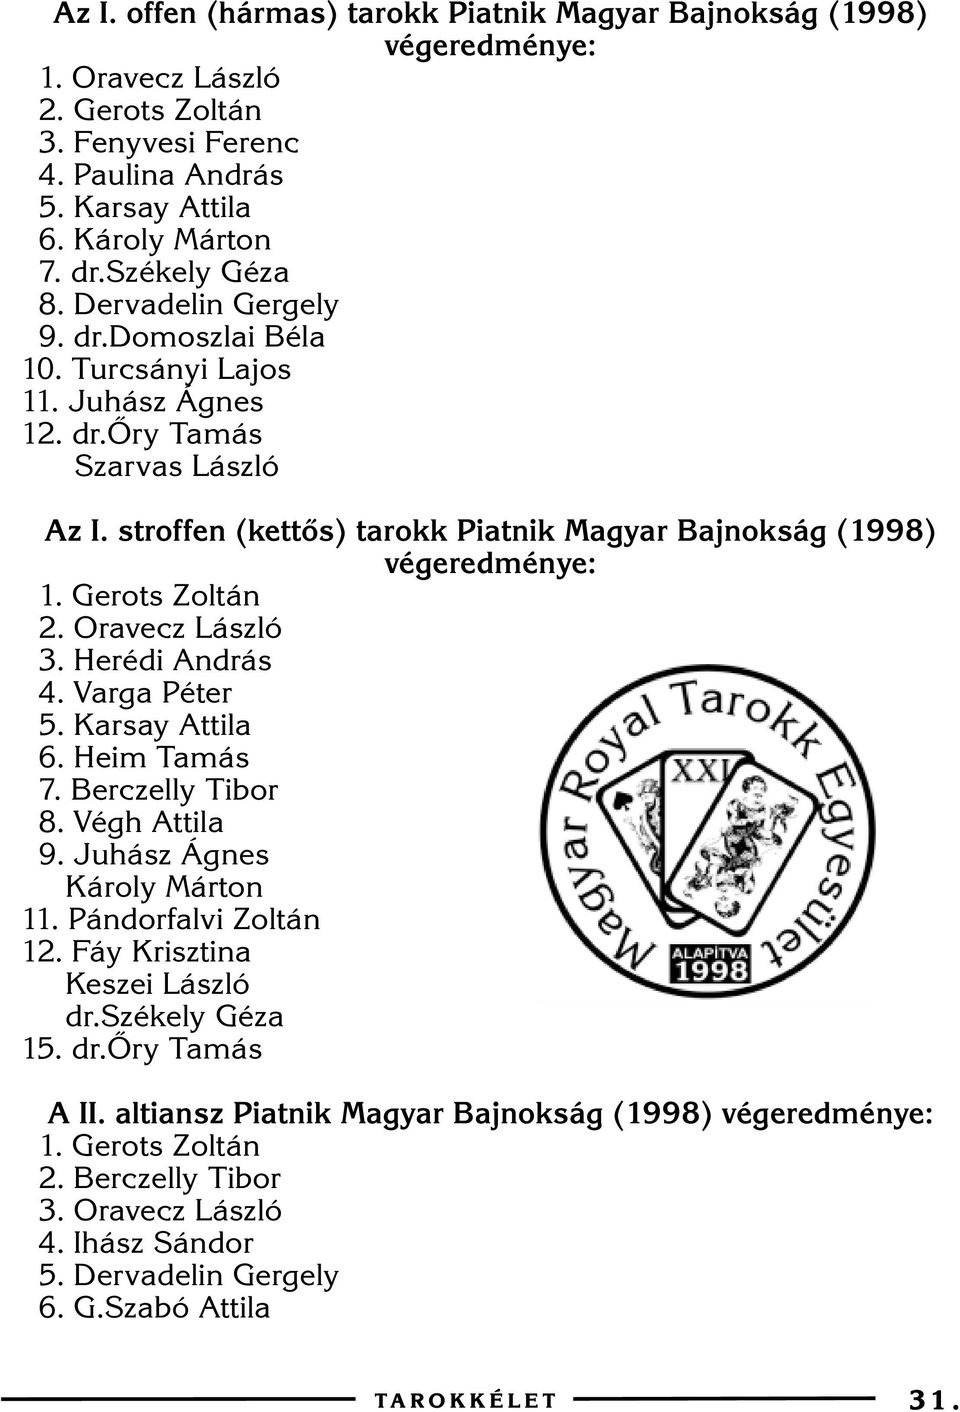 stroffen (kettõs) tarokk Piatnik Magyar Bajnokság (1998) végeredménye: 1. Gerots Zoltán 2. Oravecz László 3. Herédi András 4. Varga Péter 5. Karsay Attila 6. Heim Tamás 7. Berczelly Tibor 8.